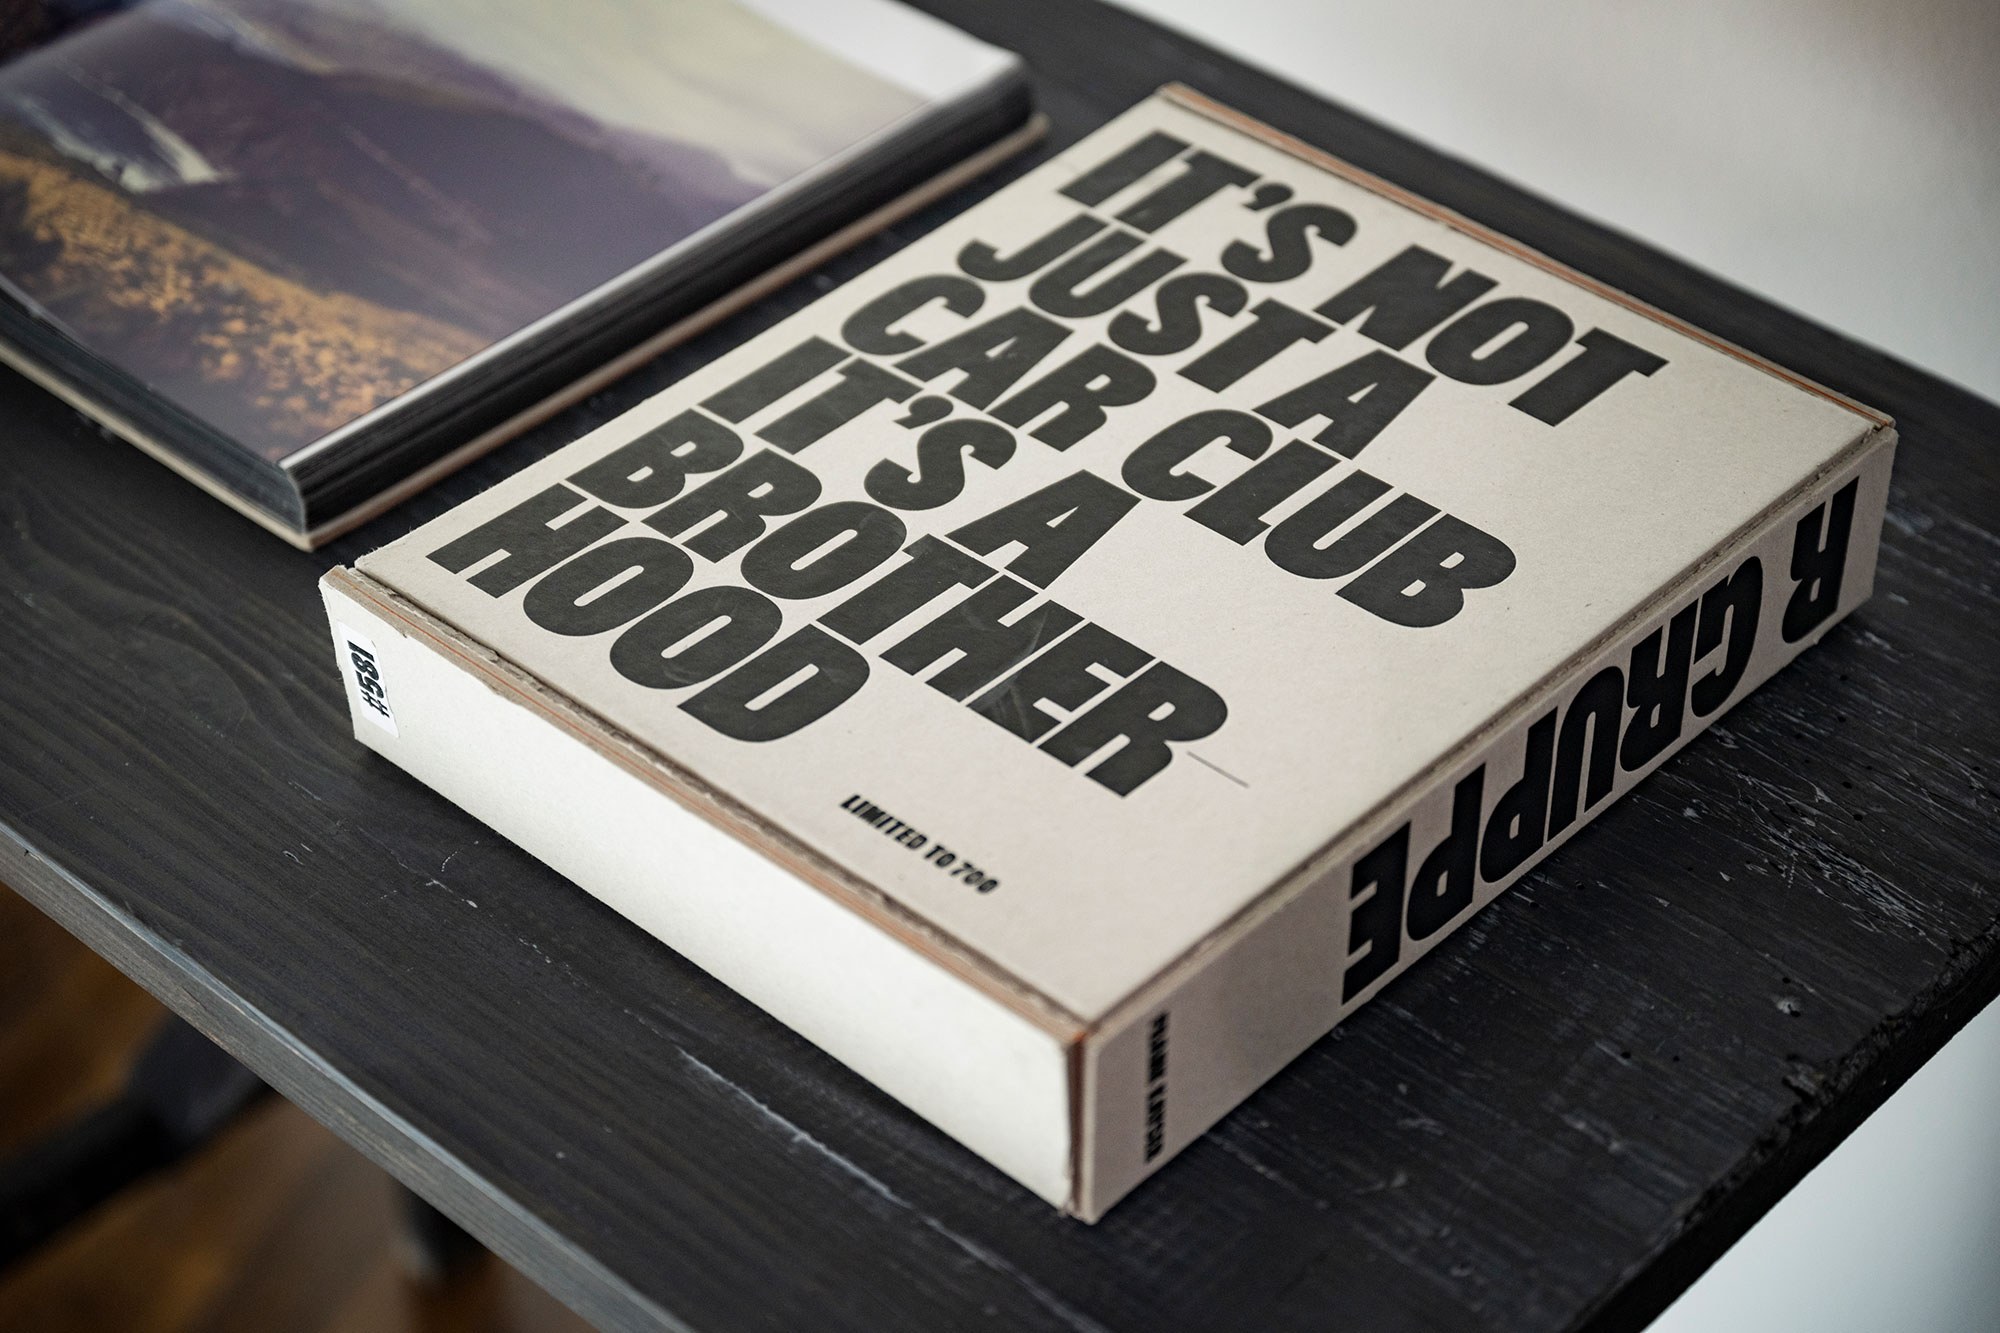 Foto eines Buches mit dem Titel "Its not just a car club its a brotherhood", neben einem anderen Buch auf schwarzem Tisch liegend..